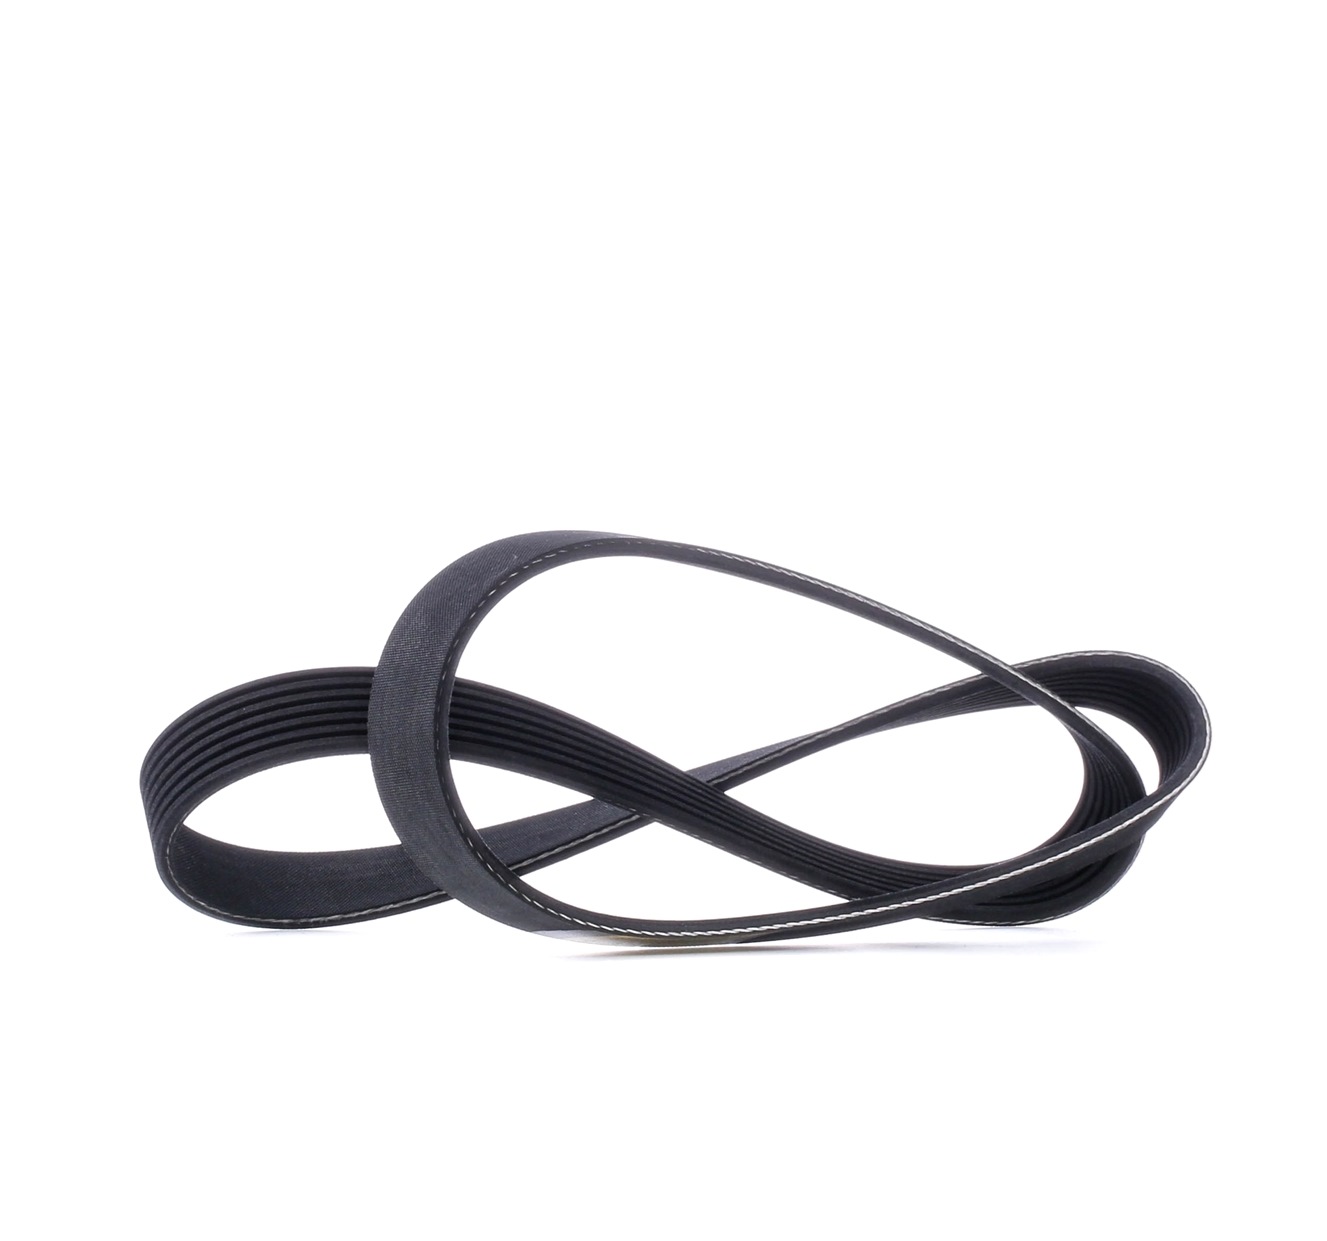 STARK SKPB-0090020 Serpentine belt 1125mm, 7, Polyester, EPDM (ethylene propylene diene Monomer (M-class) rubber)